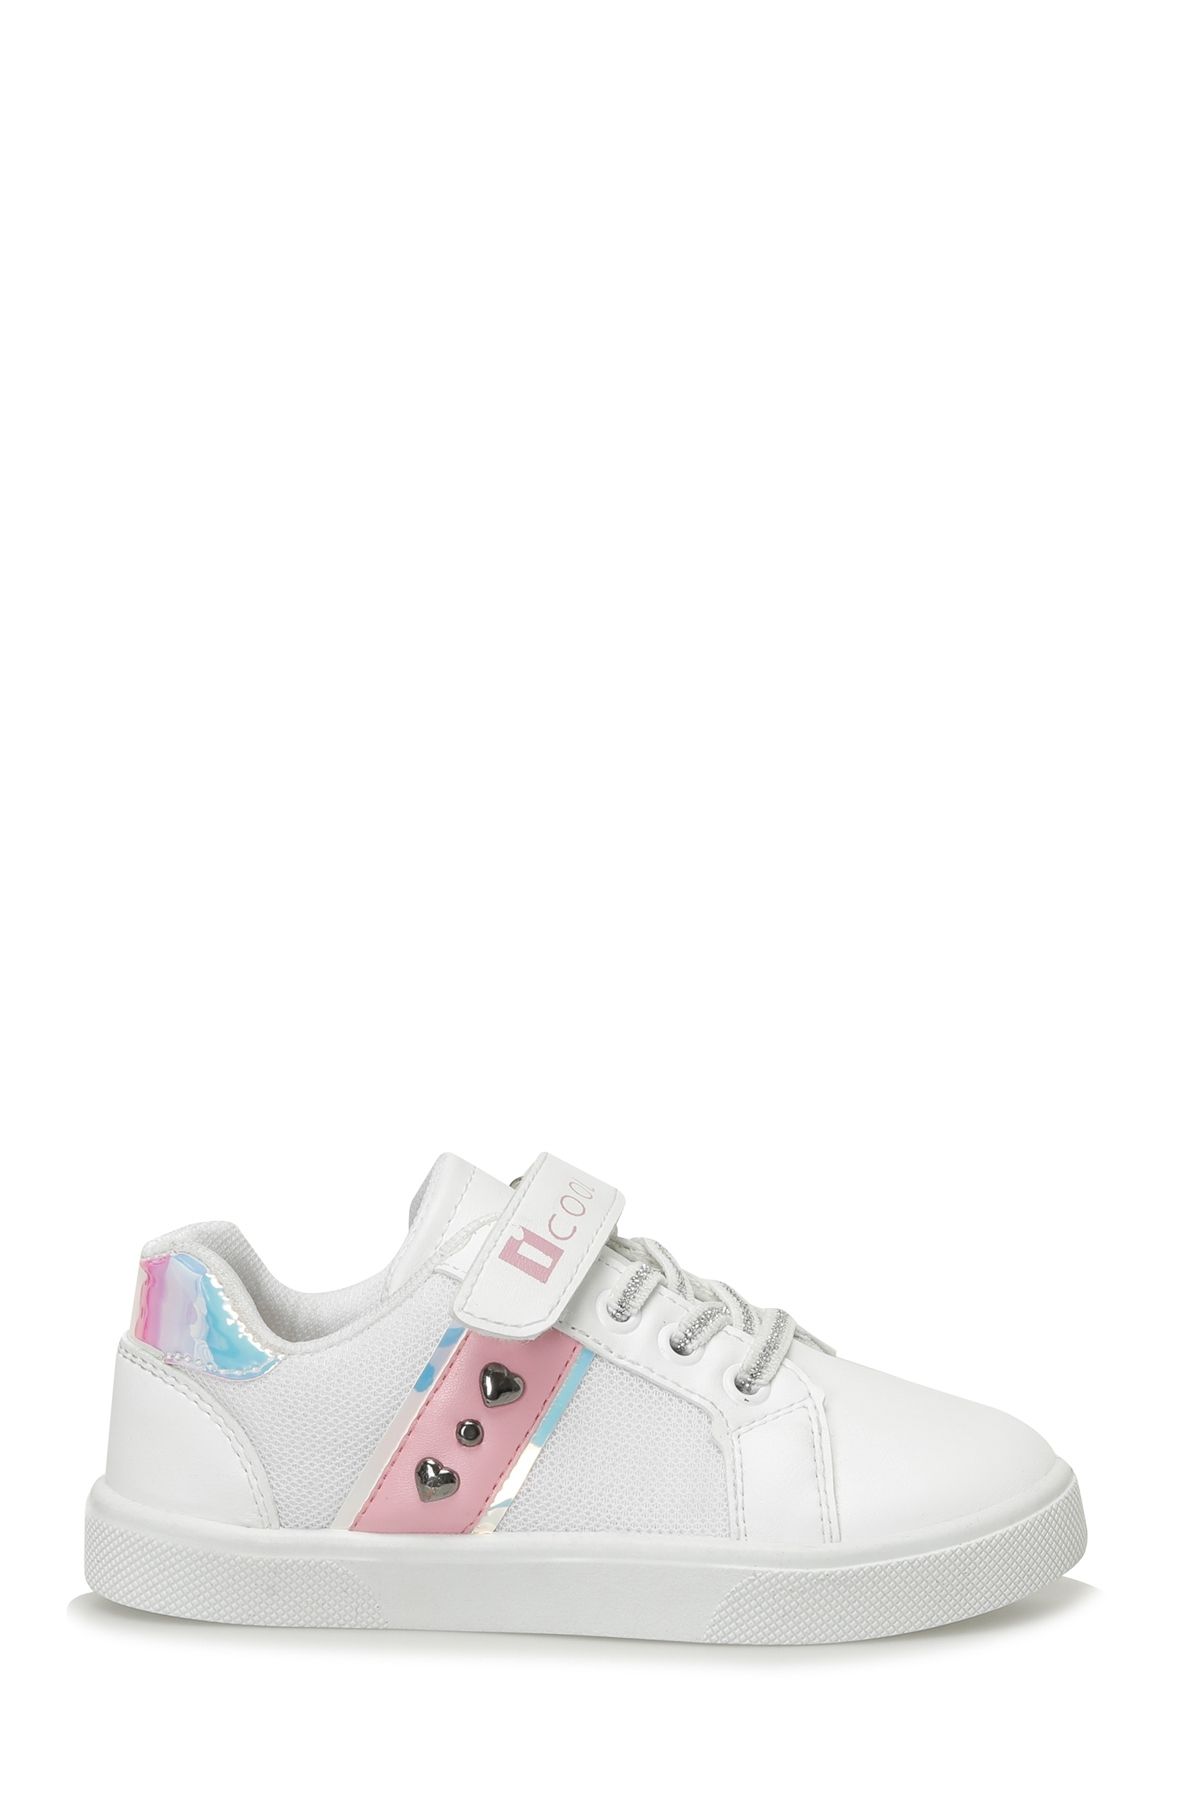 Icool COSE.P 4FX Beyaz Kız Çocuk Sneaker